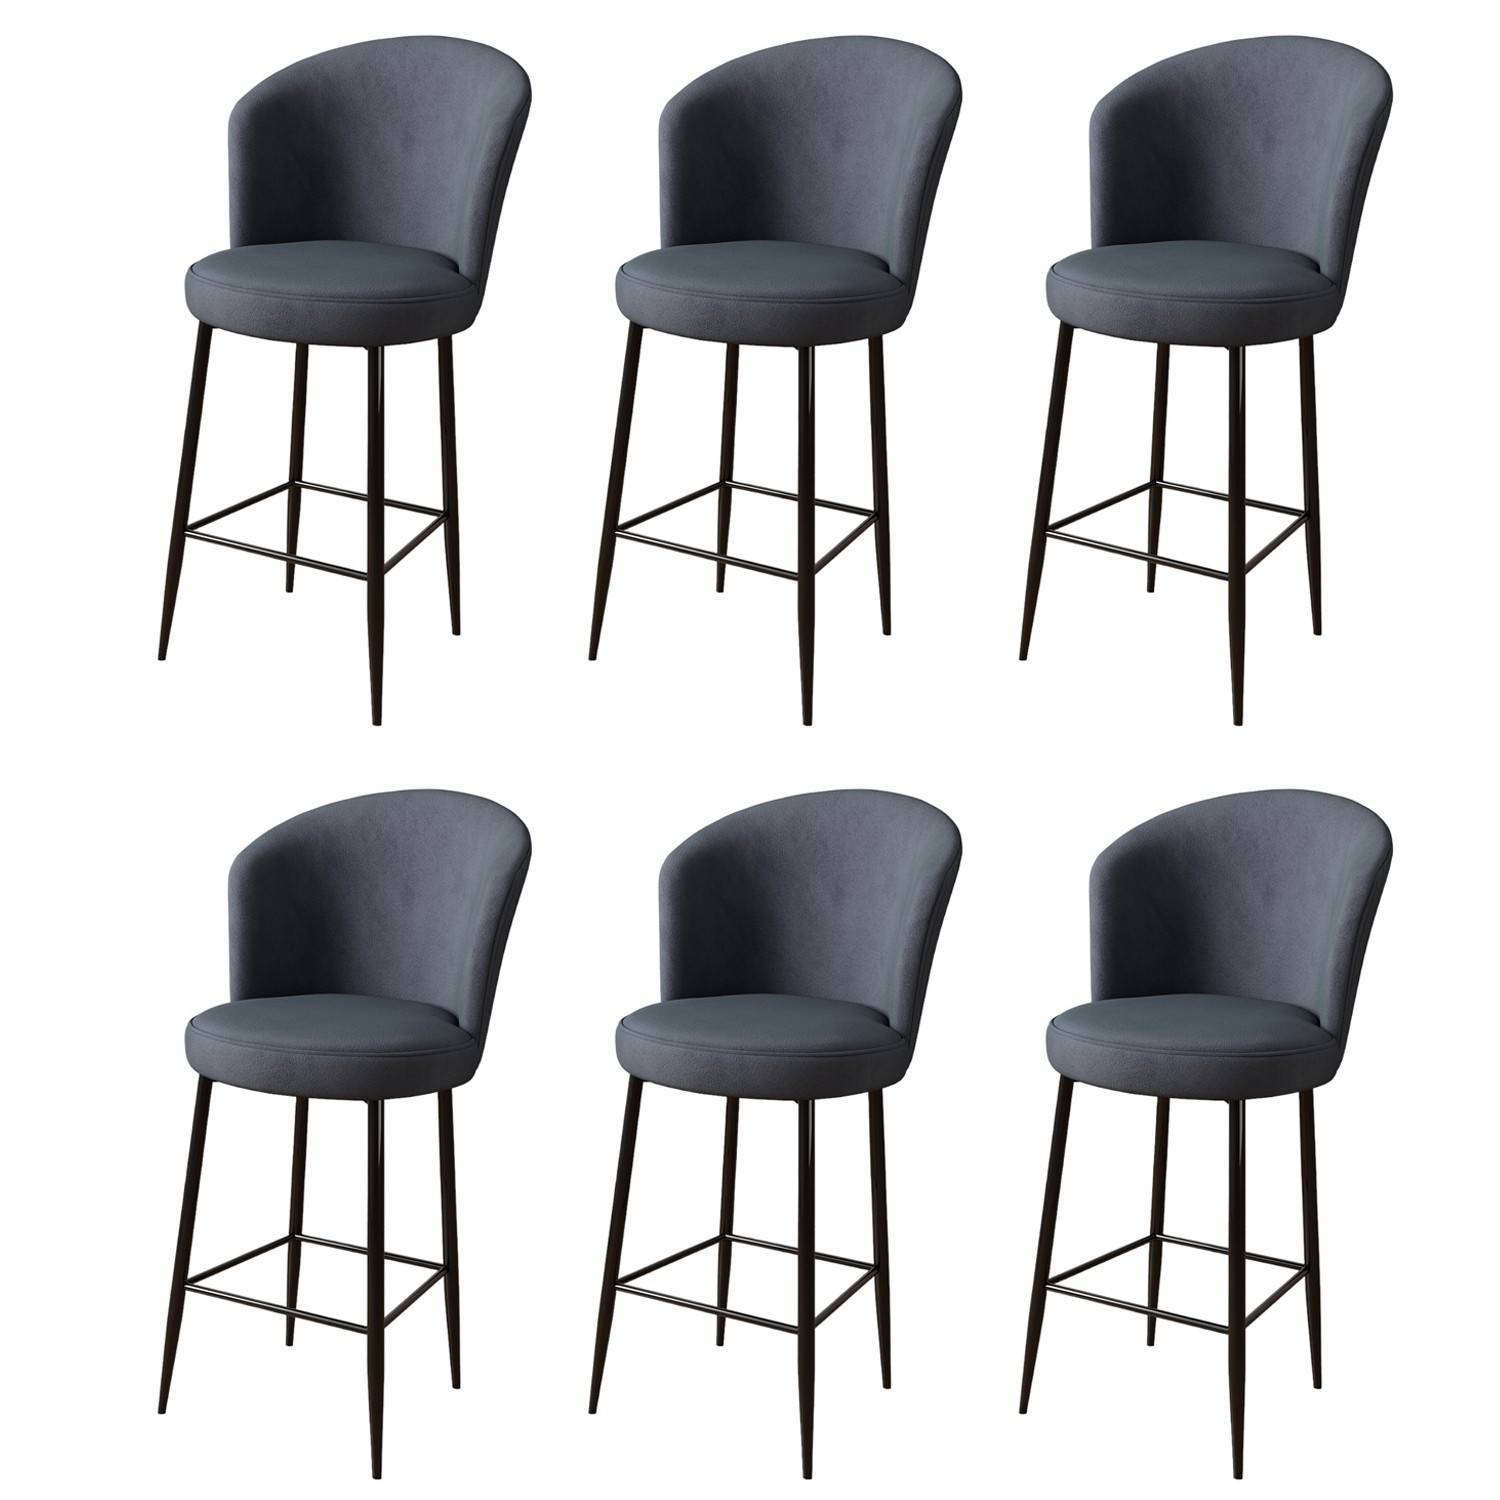 Lote de 6 sillas de bar Valatio de terciopelo antracita y metal negro